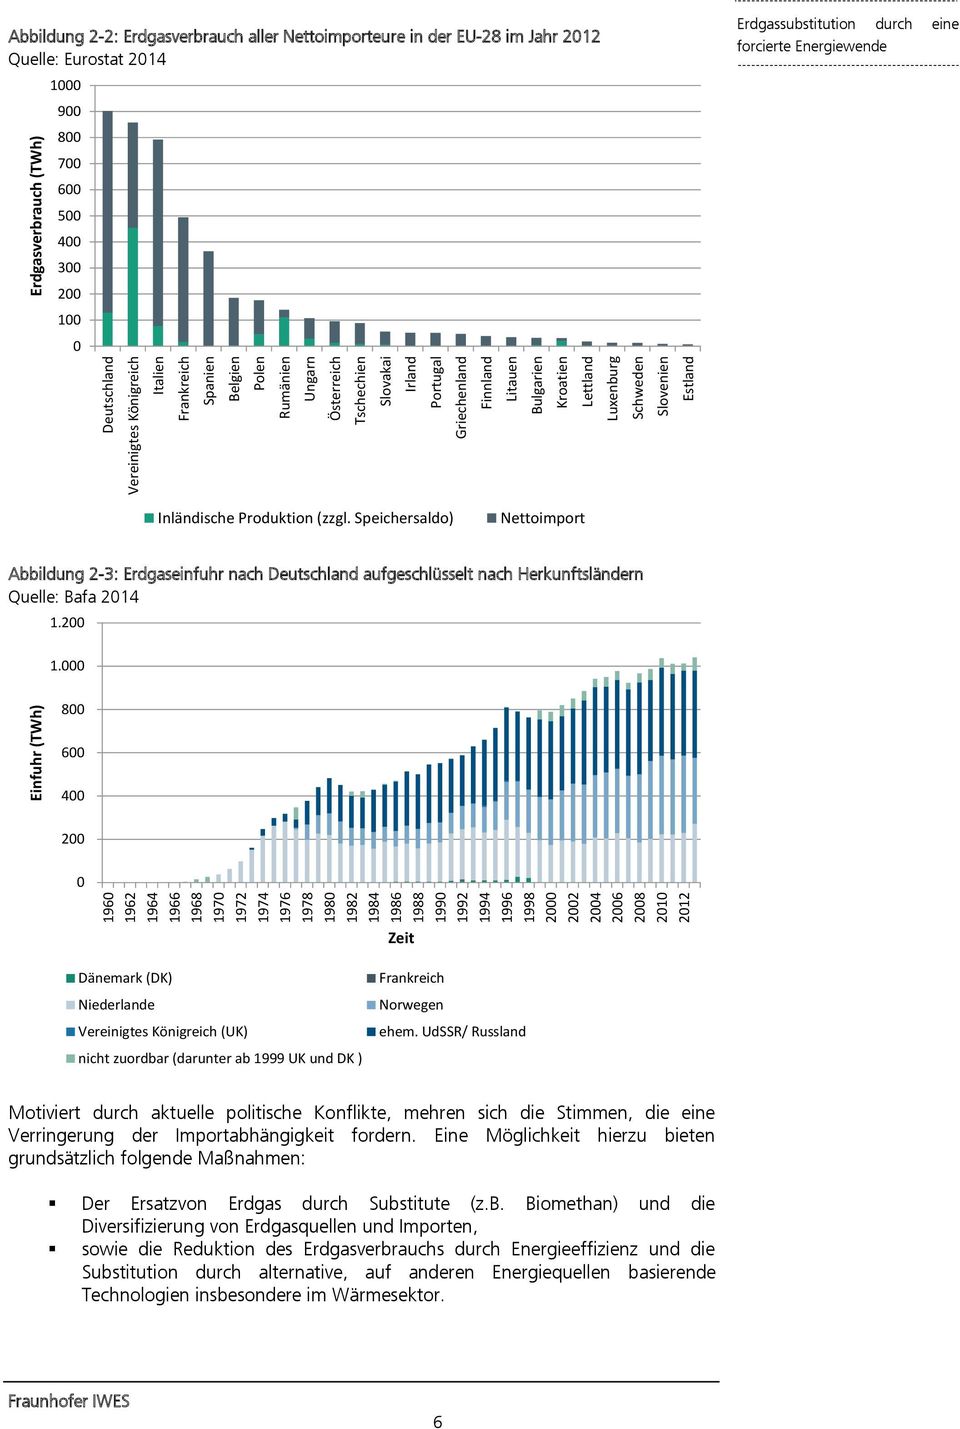 Erdgasverbrauch (TWh) Abbildung 2-2: Erdgasverbrauch aller Nettoimporteure in der EU-28 im Jahr 2012 Quelle: Eurostat 2014 1000 900 800 700 600 500 400 300 200 100 0 Inländische Produktion (zzgl.